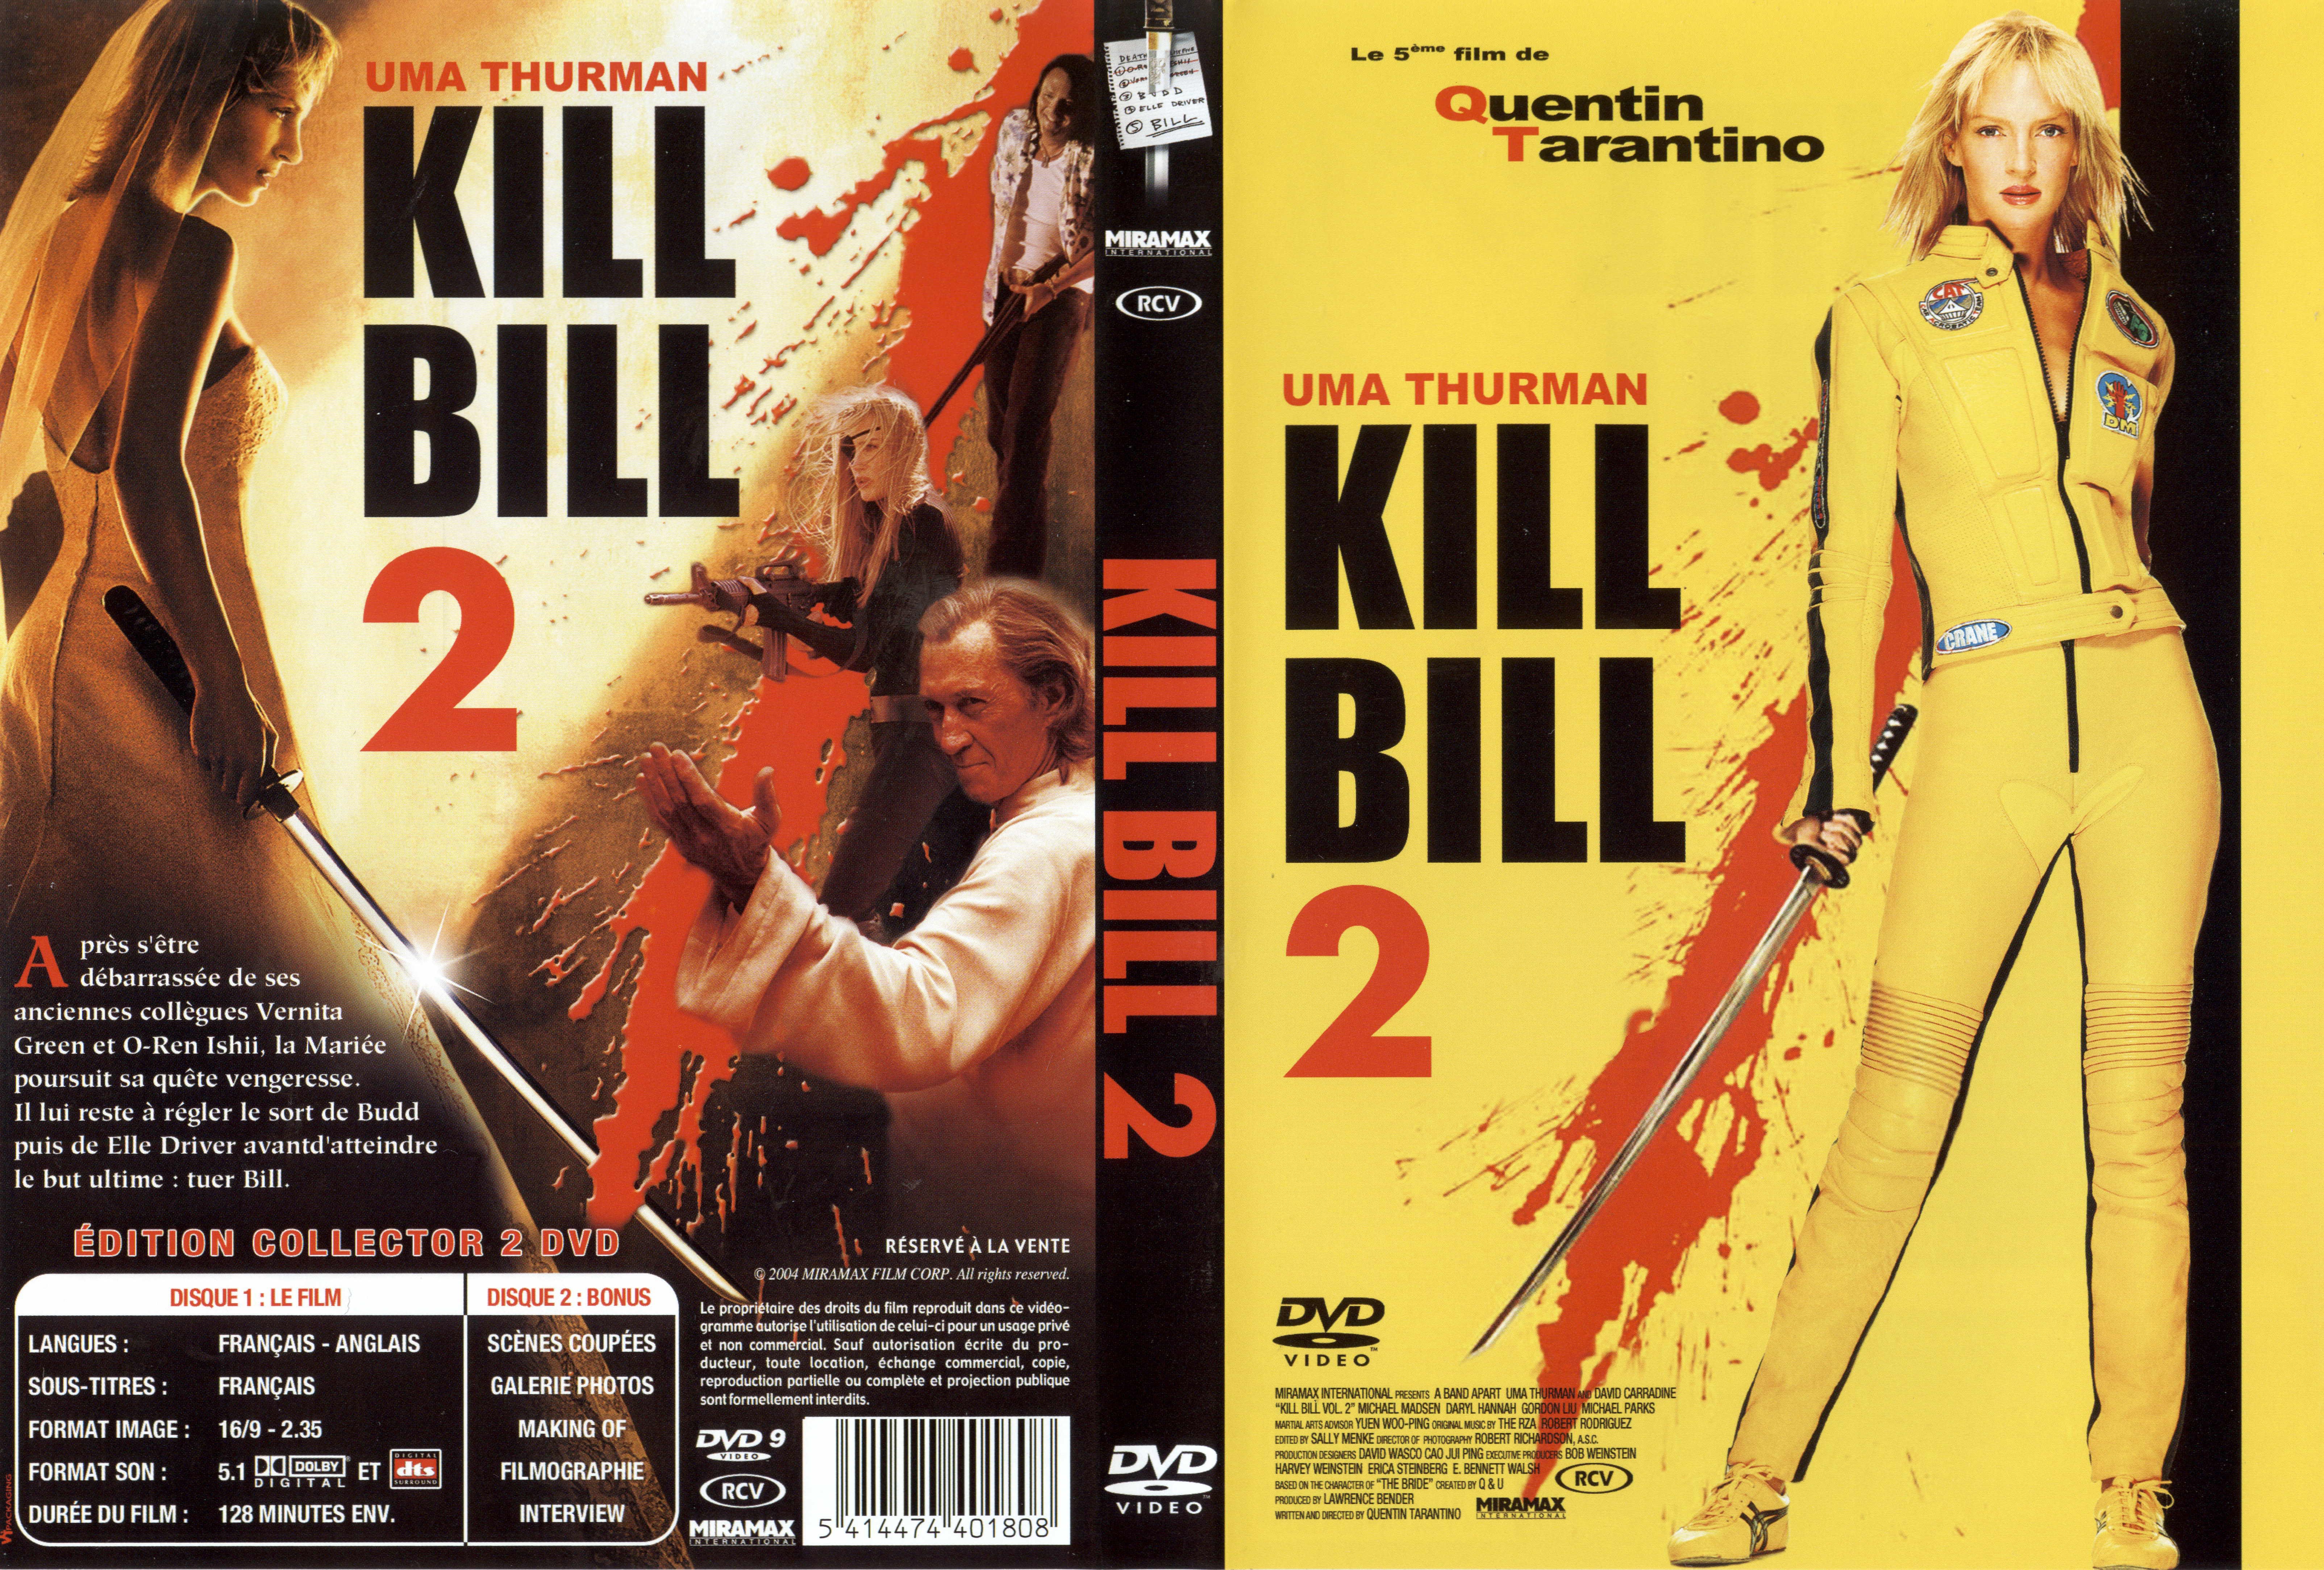 Jaquette DVD Kill bill vol 2 v5